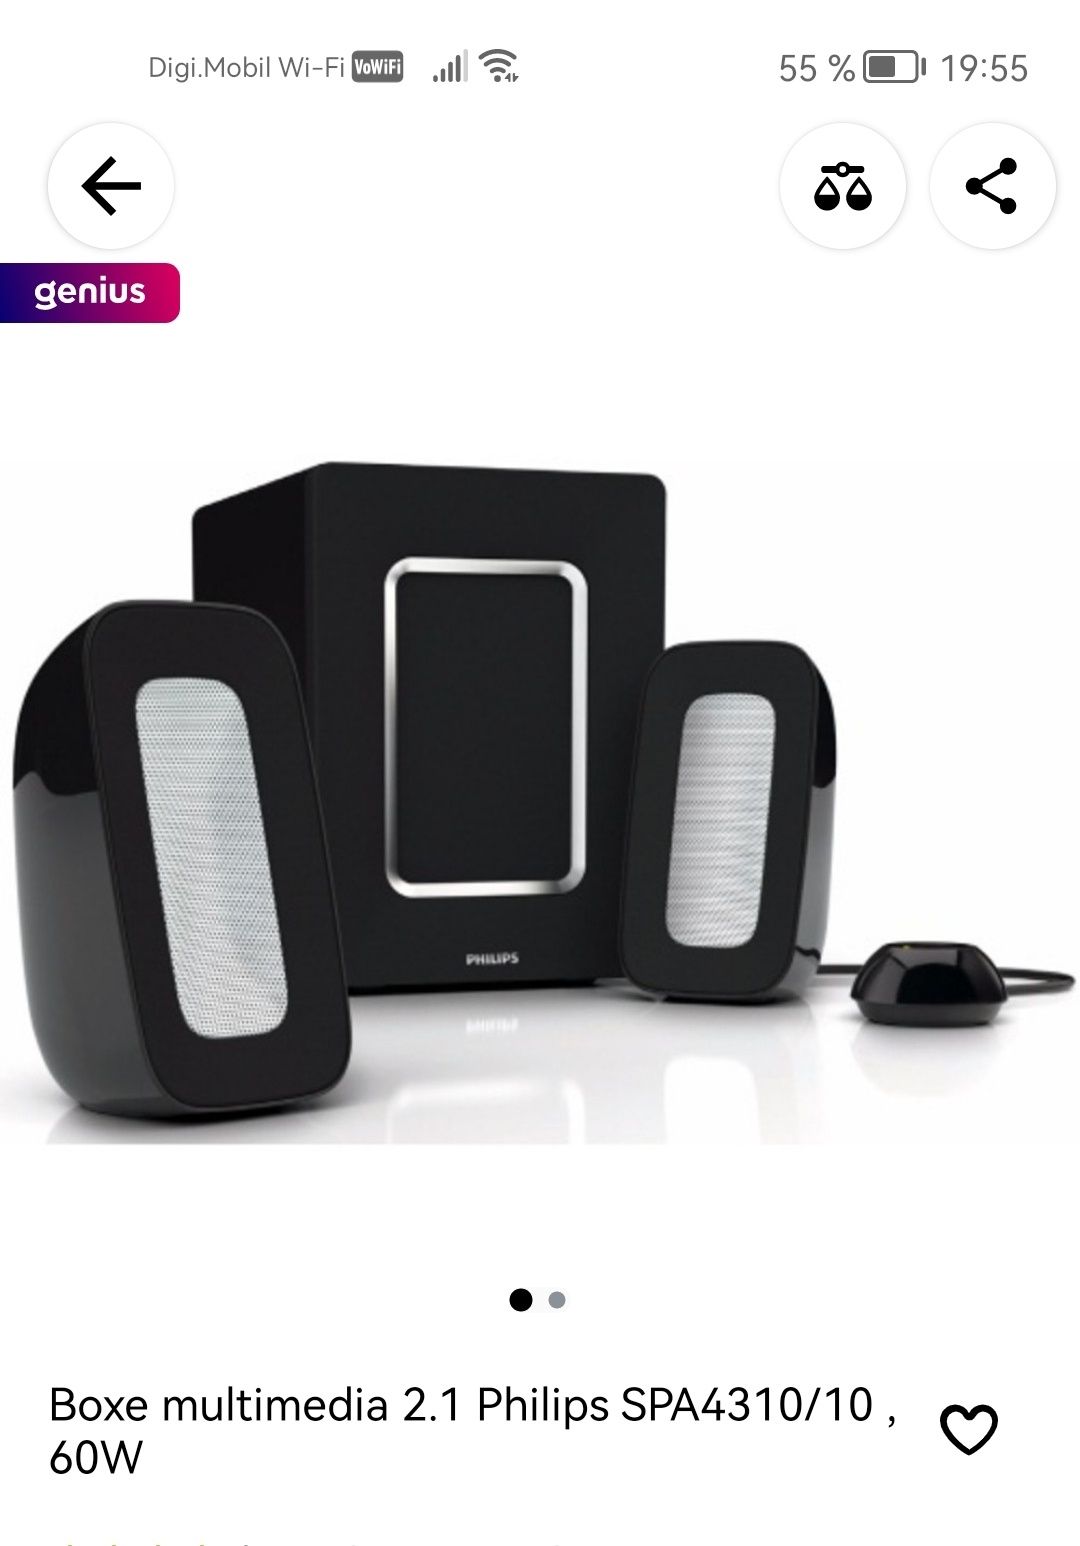 Philips speaker system